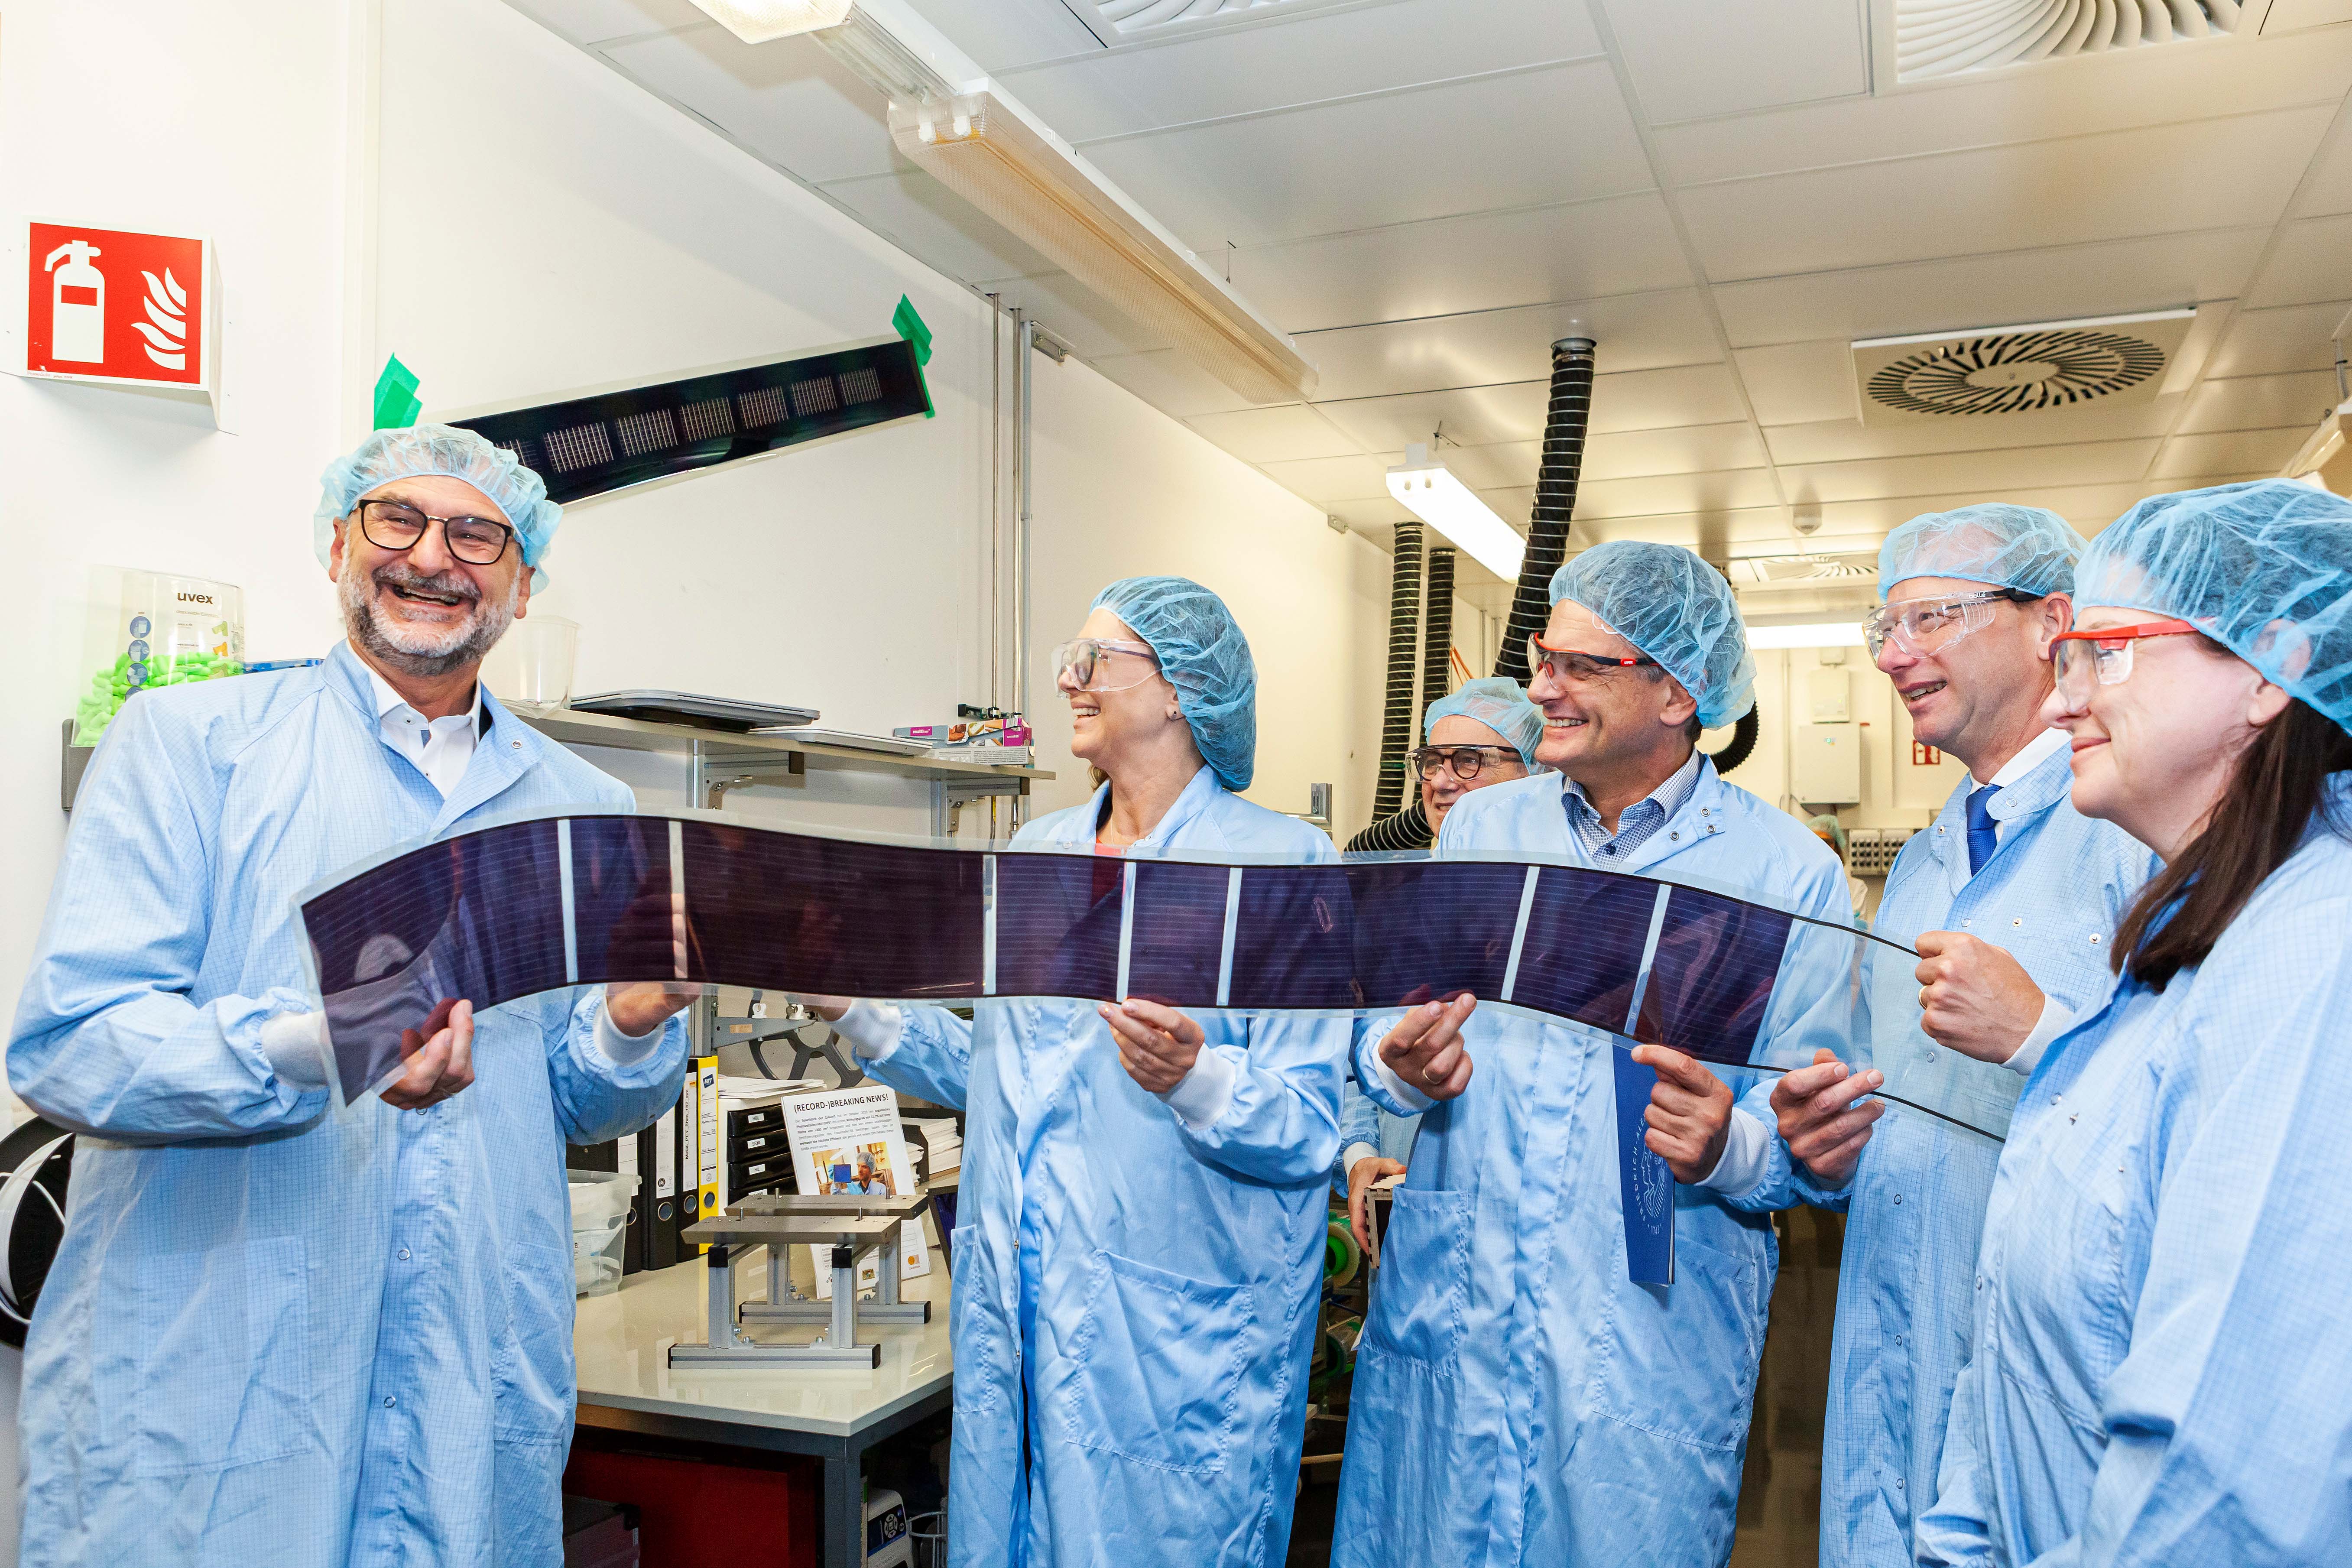 Die gedruckten Solarzellen machen glücklich - und sind nicht verschreibungspflichtig